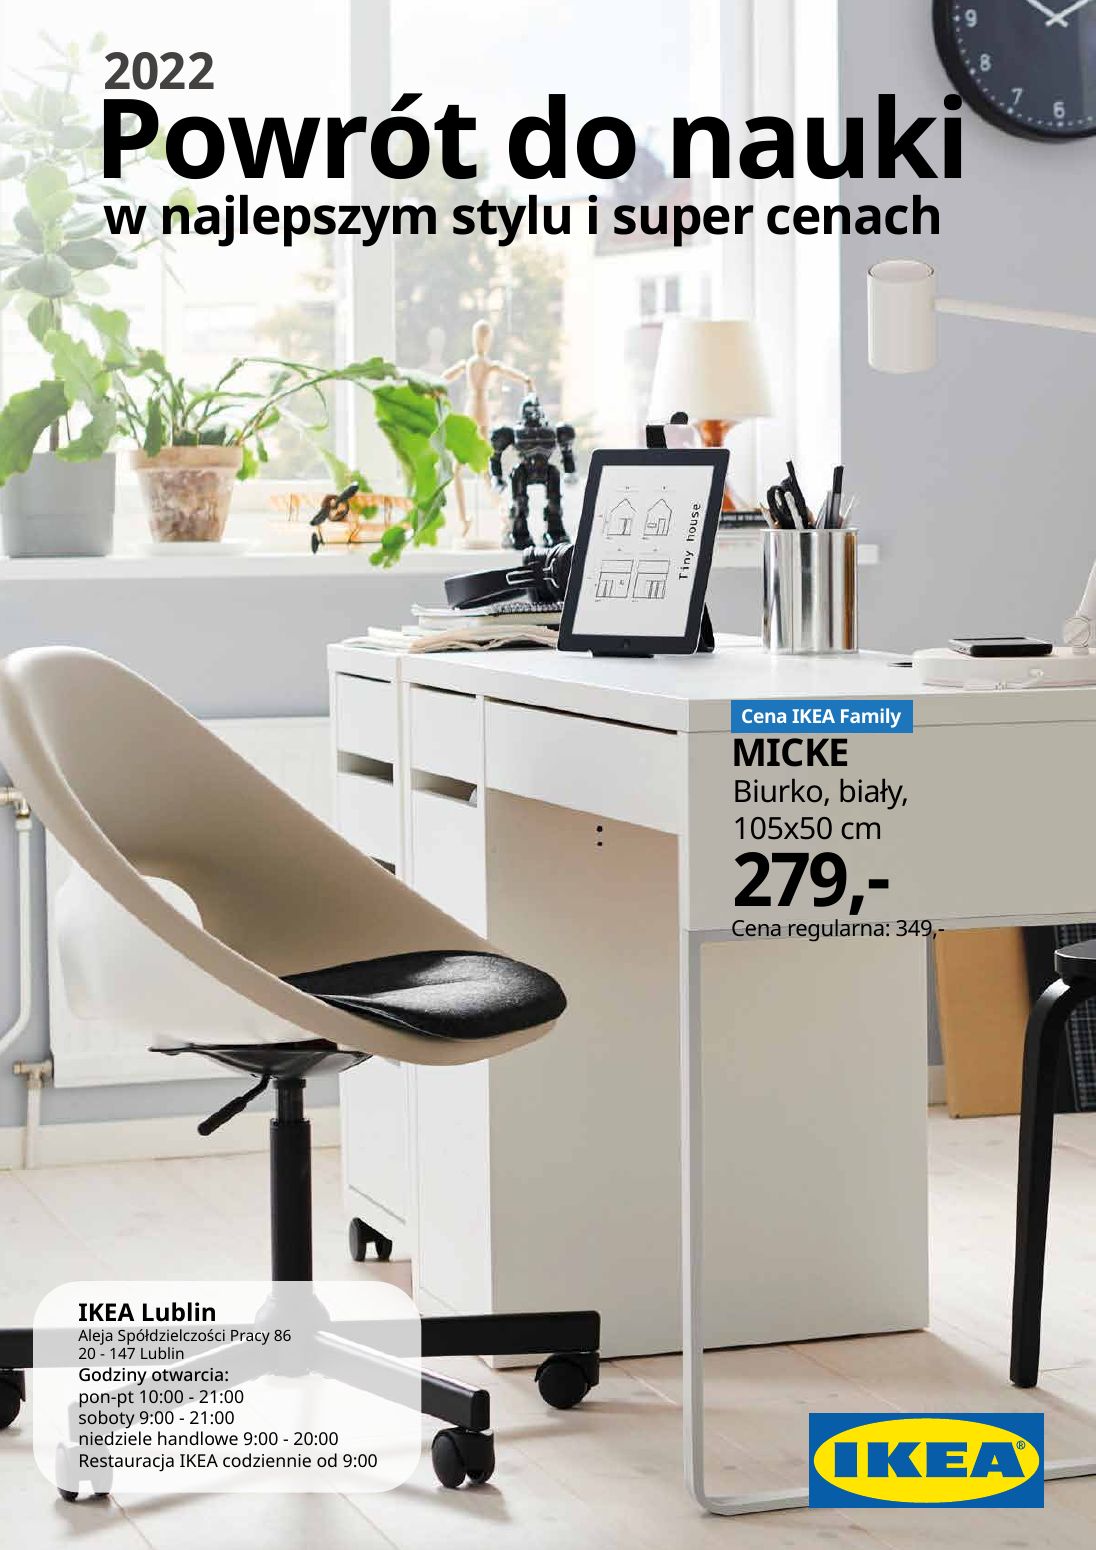 IKEA gazetka od 01.08.2022 do 06.09.2022